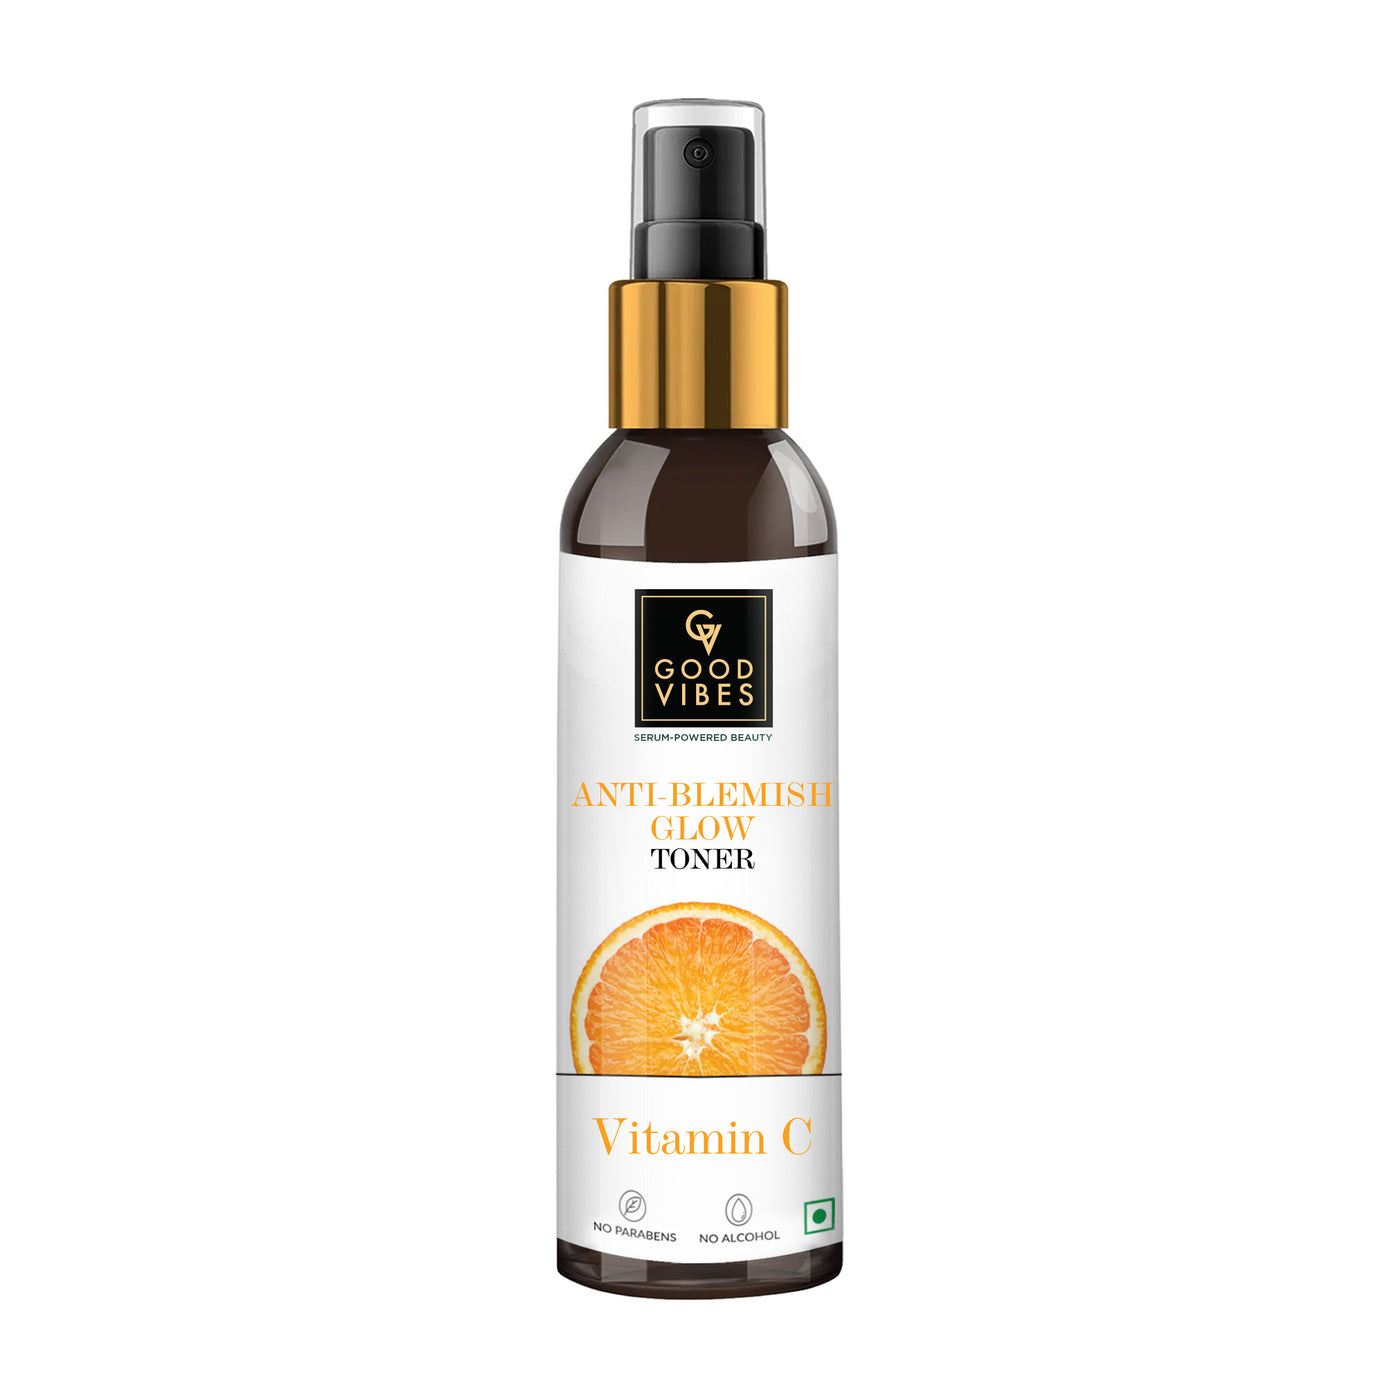 Serum Powered Beauty Anti Blemish Glow Toner Vitamin C with Power of Serum | (120 ml)